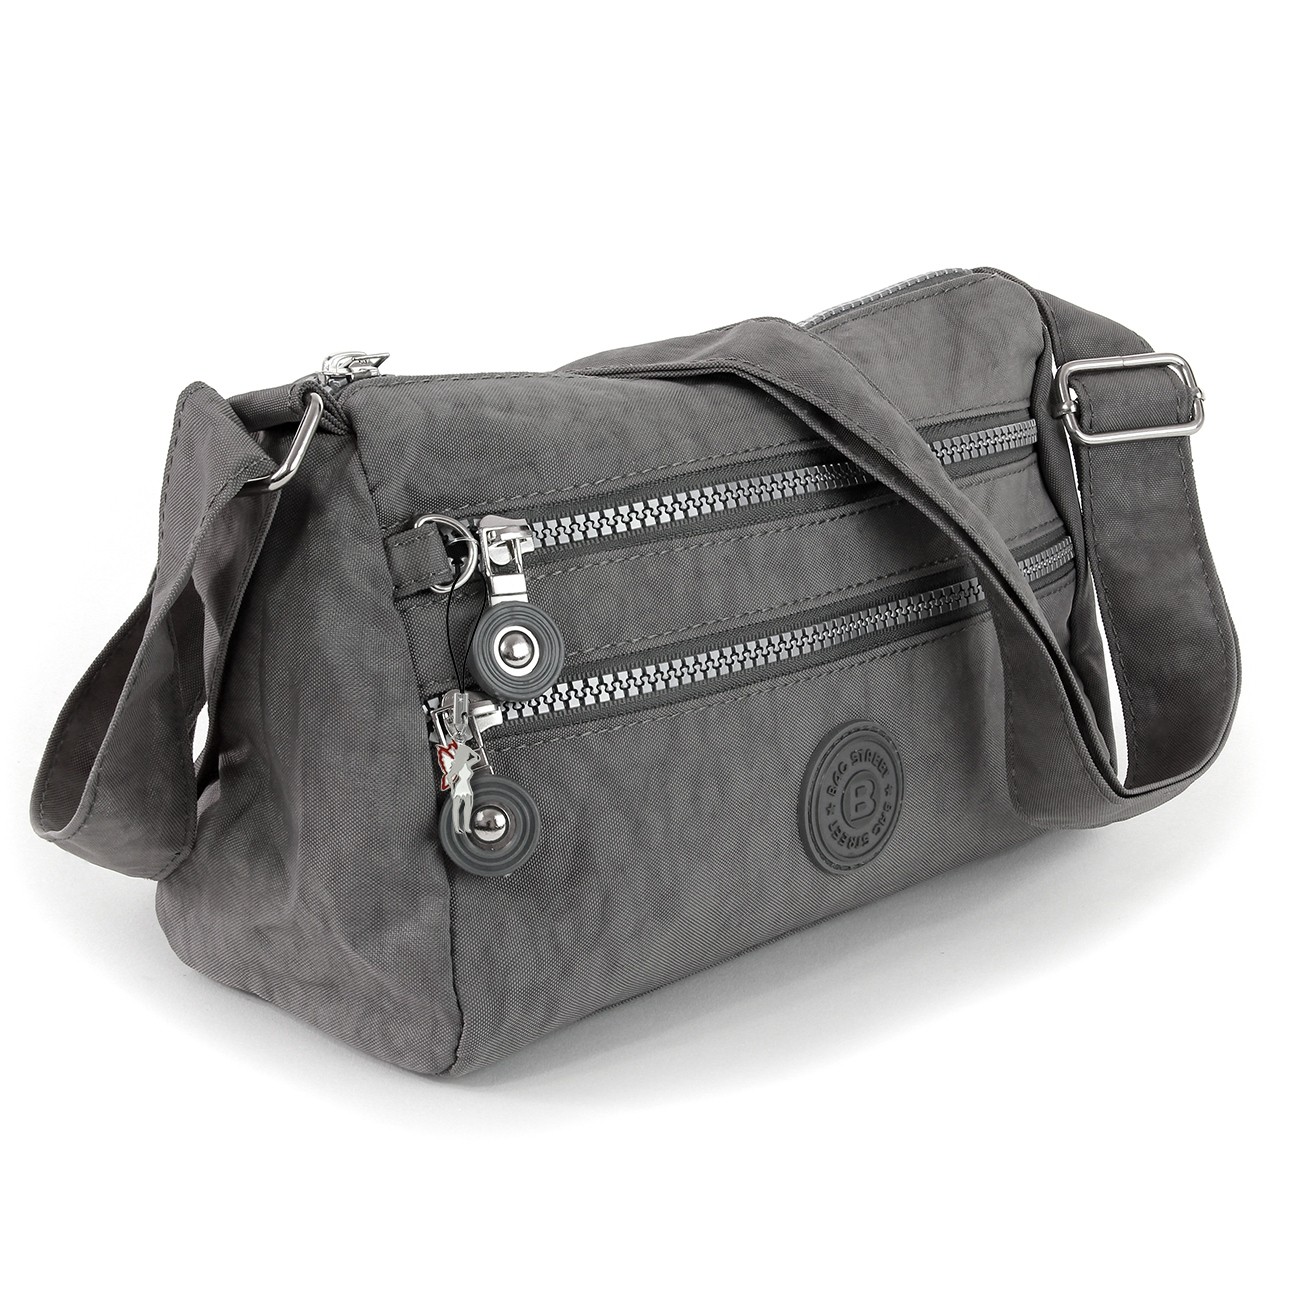 Bag Street Umhängetasche Crinkle Nylon grau sportliche Damen Handtasche OTJ229K